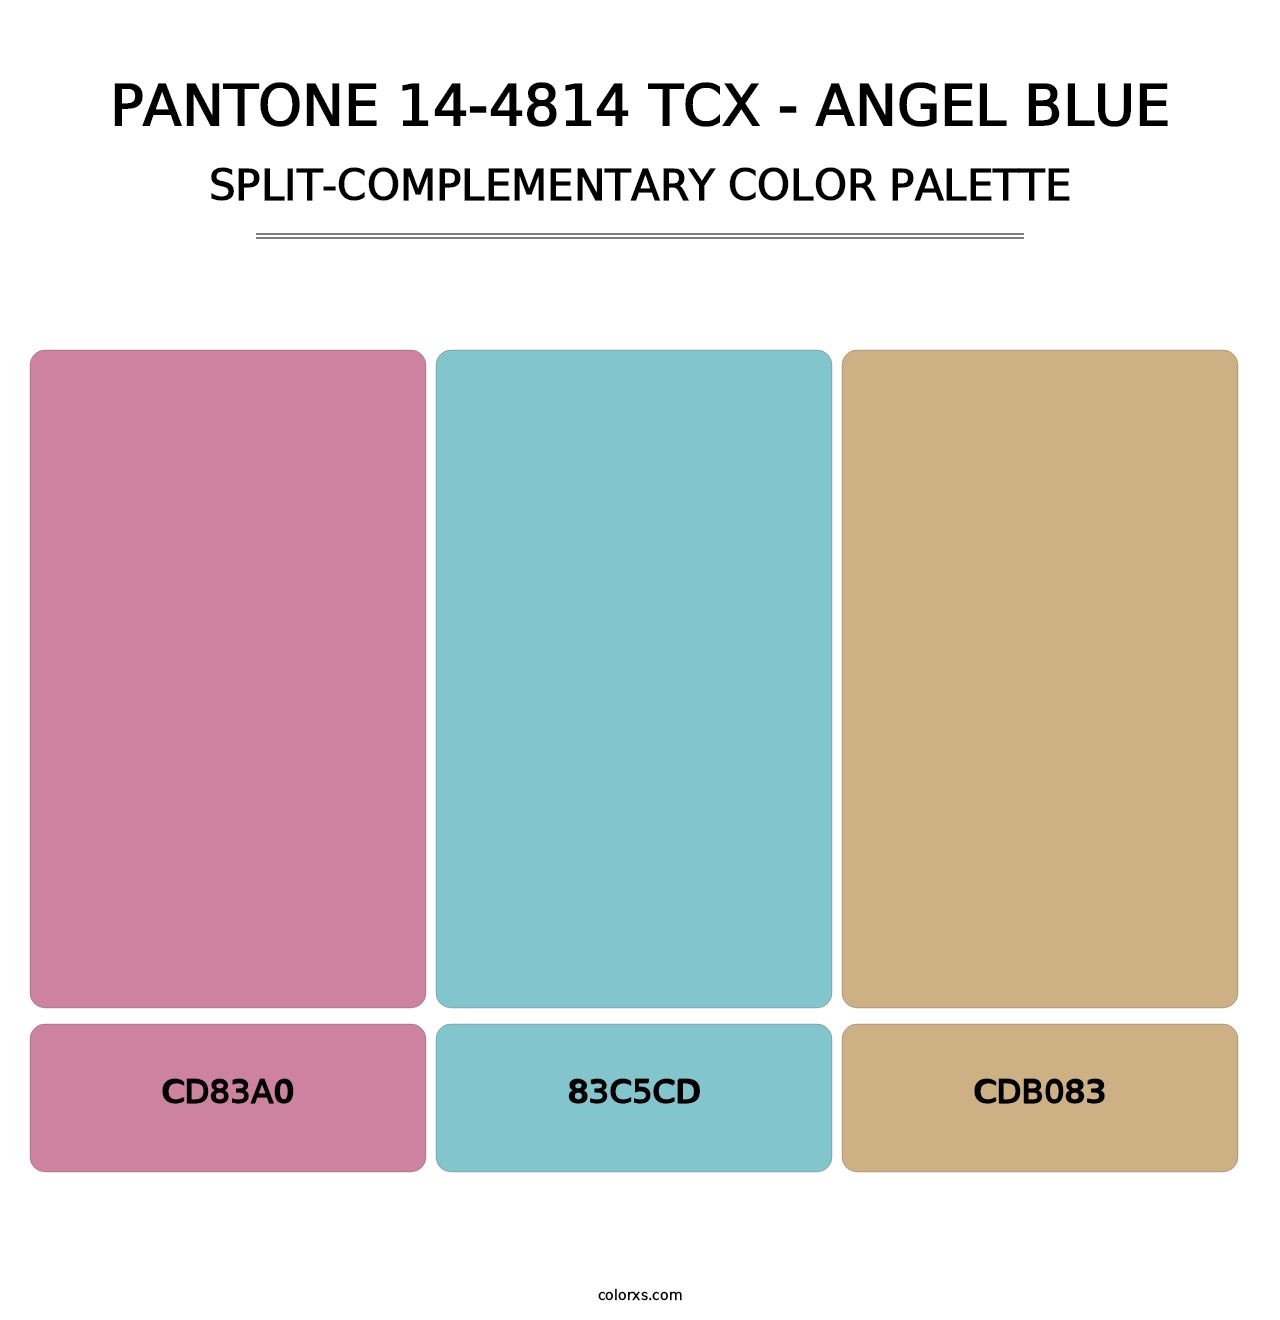 PANTONE 14-4814 TCX - Angel Blue - Split-Complementary Color Palette